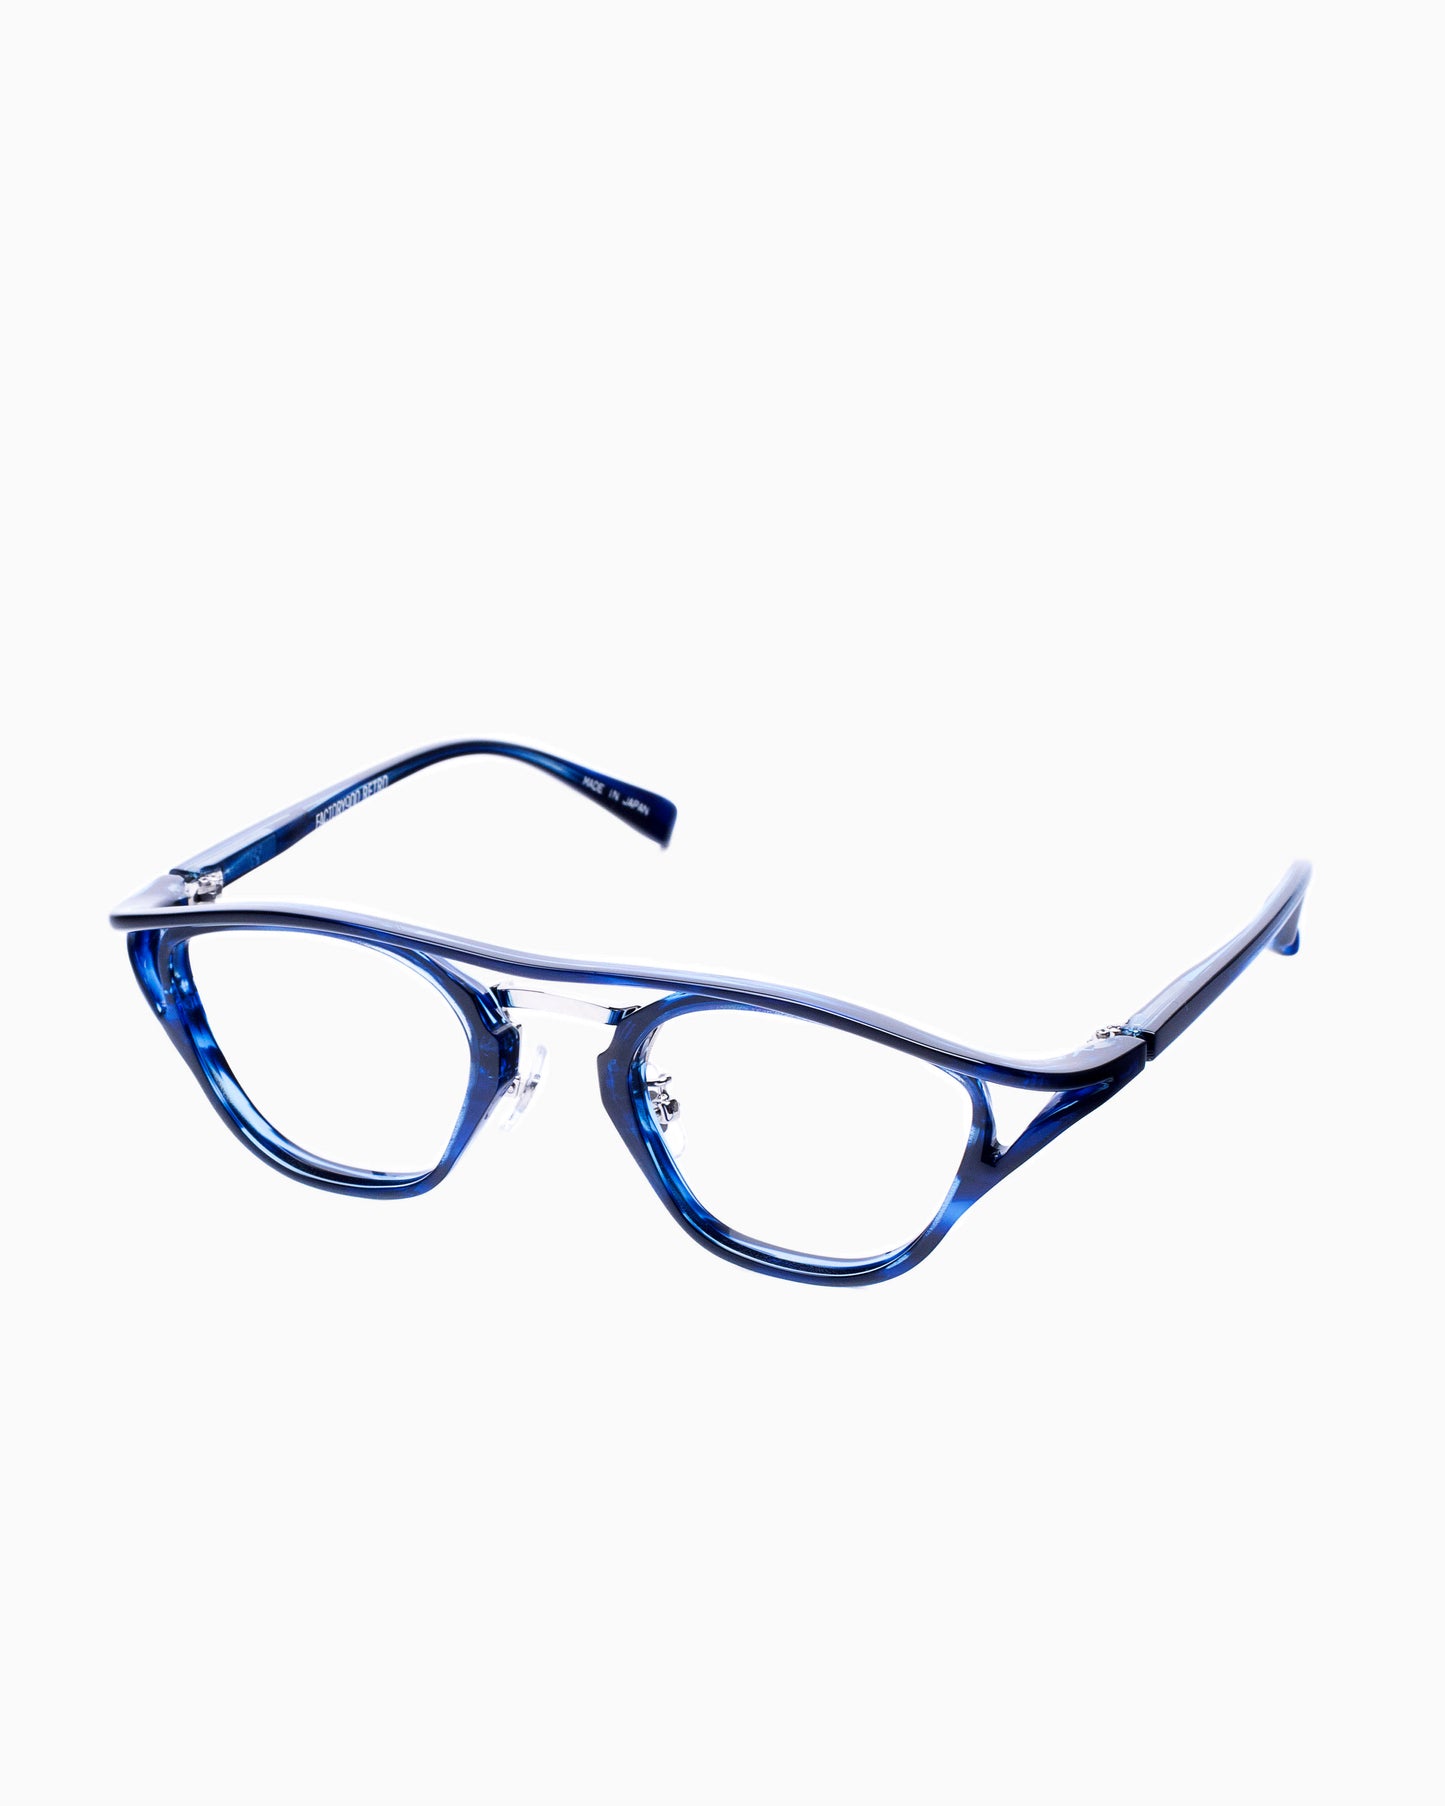 Factory 900 - RF101 - 478 | glasses bar